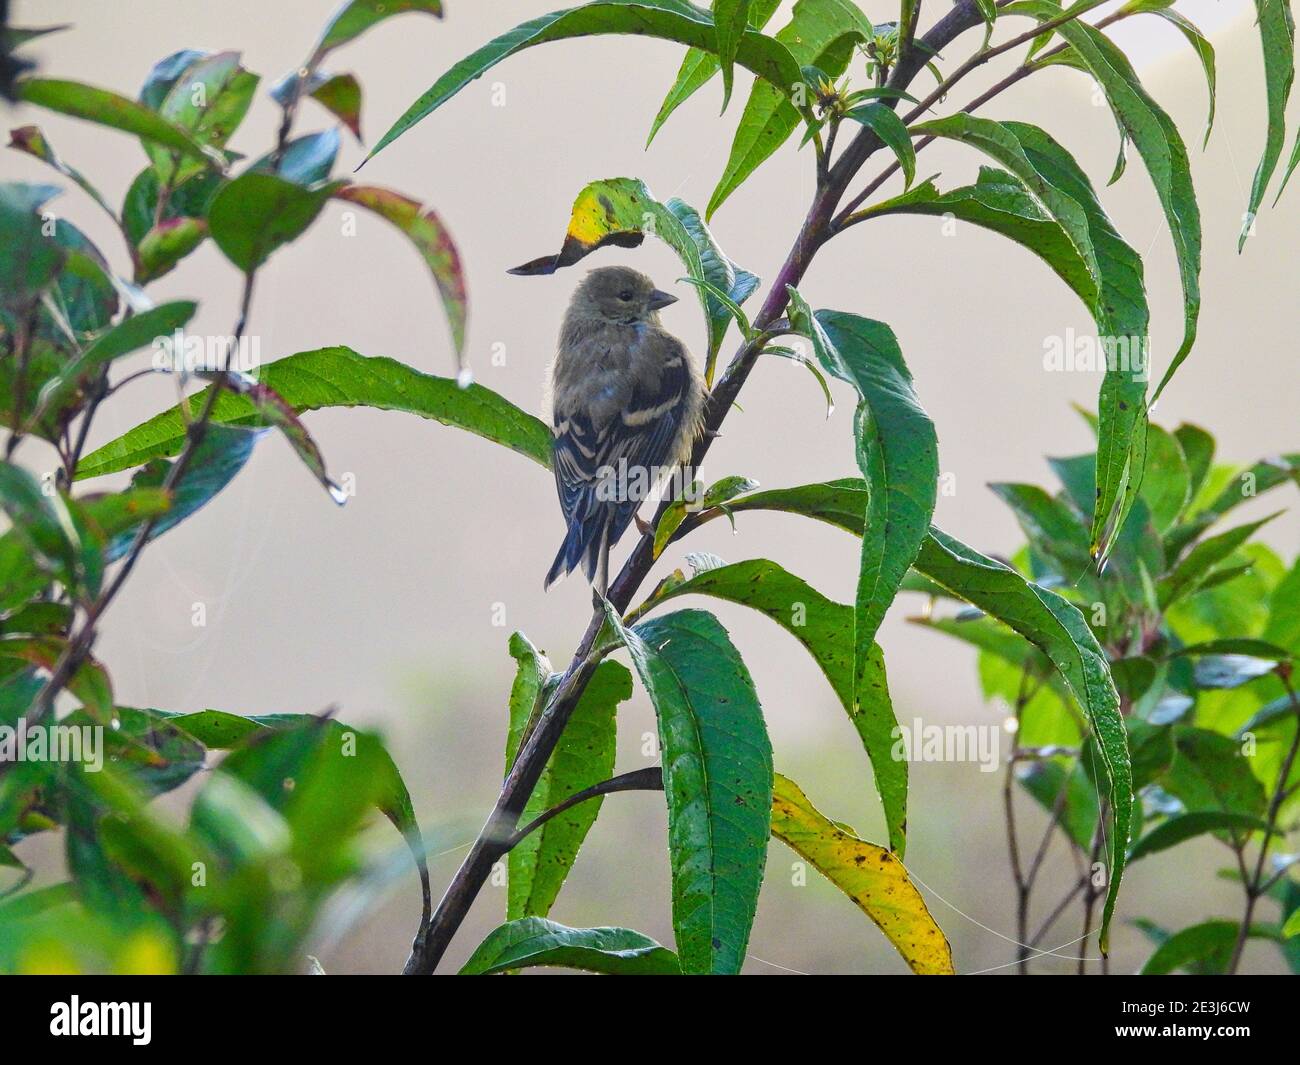 Vogel auf einem Ast: Finch hängt am frühen Morgen an einem grünen Pflanzenstamm mit Wassertröpfchen auf den grünen Blättern, während er sich umsieht Stockfoto